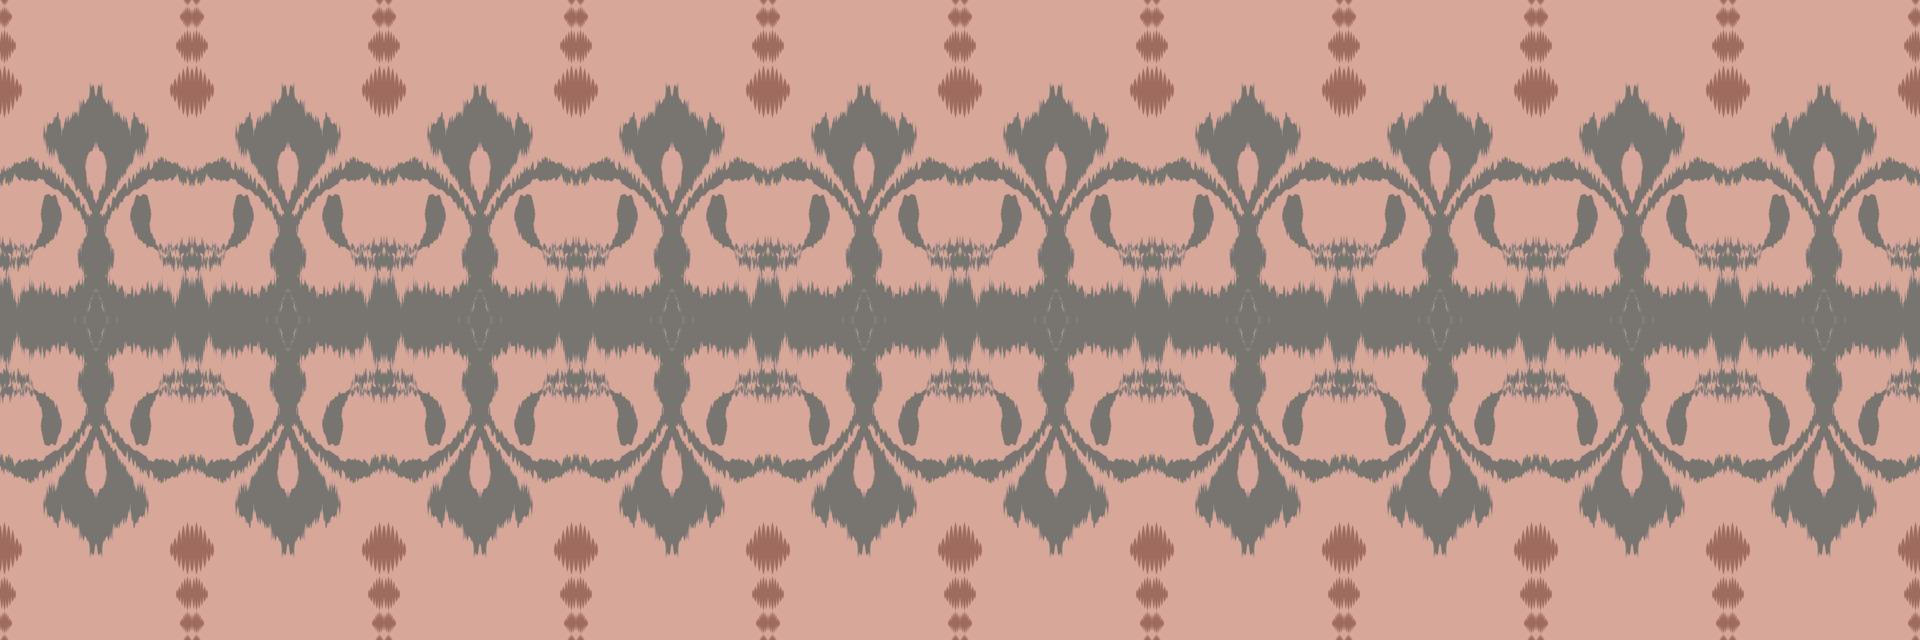 batik textil- ikat blommor sömlös mönster digital vektor design för skriva ut saree kurti borneo tyg gräns borsta symboler färgrutor bomull